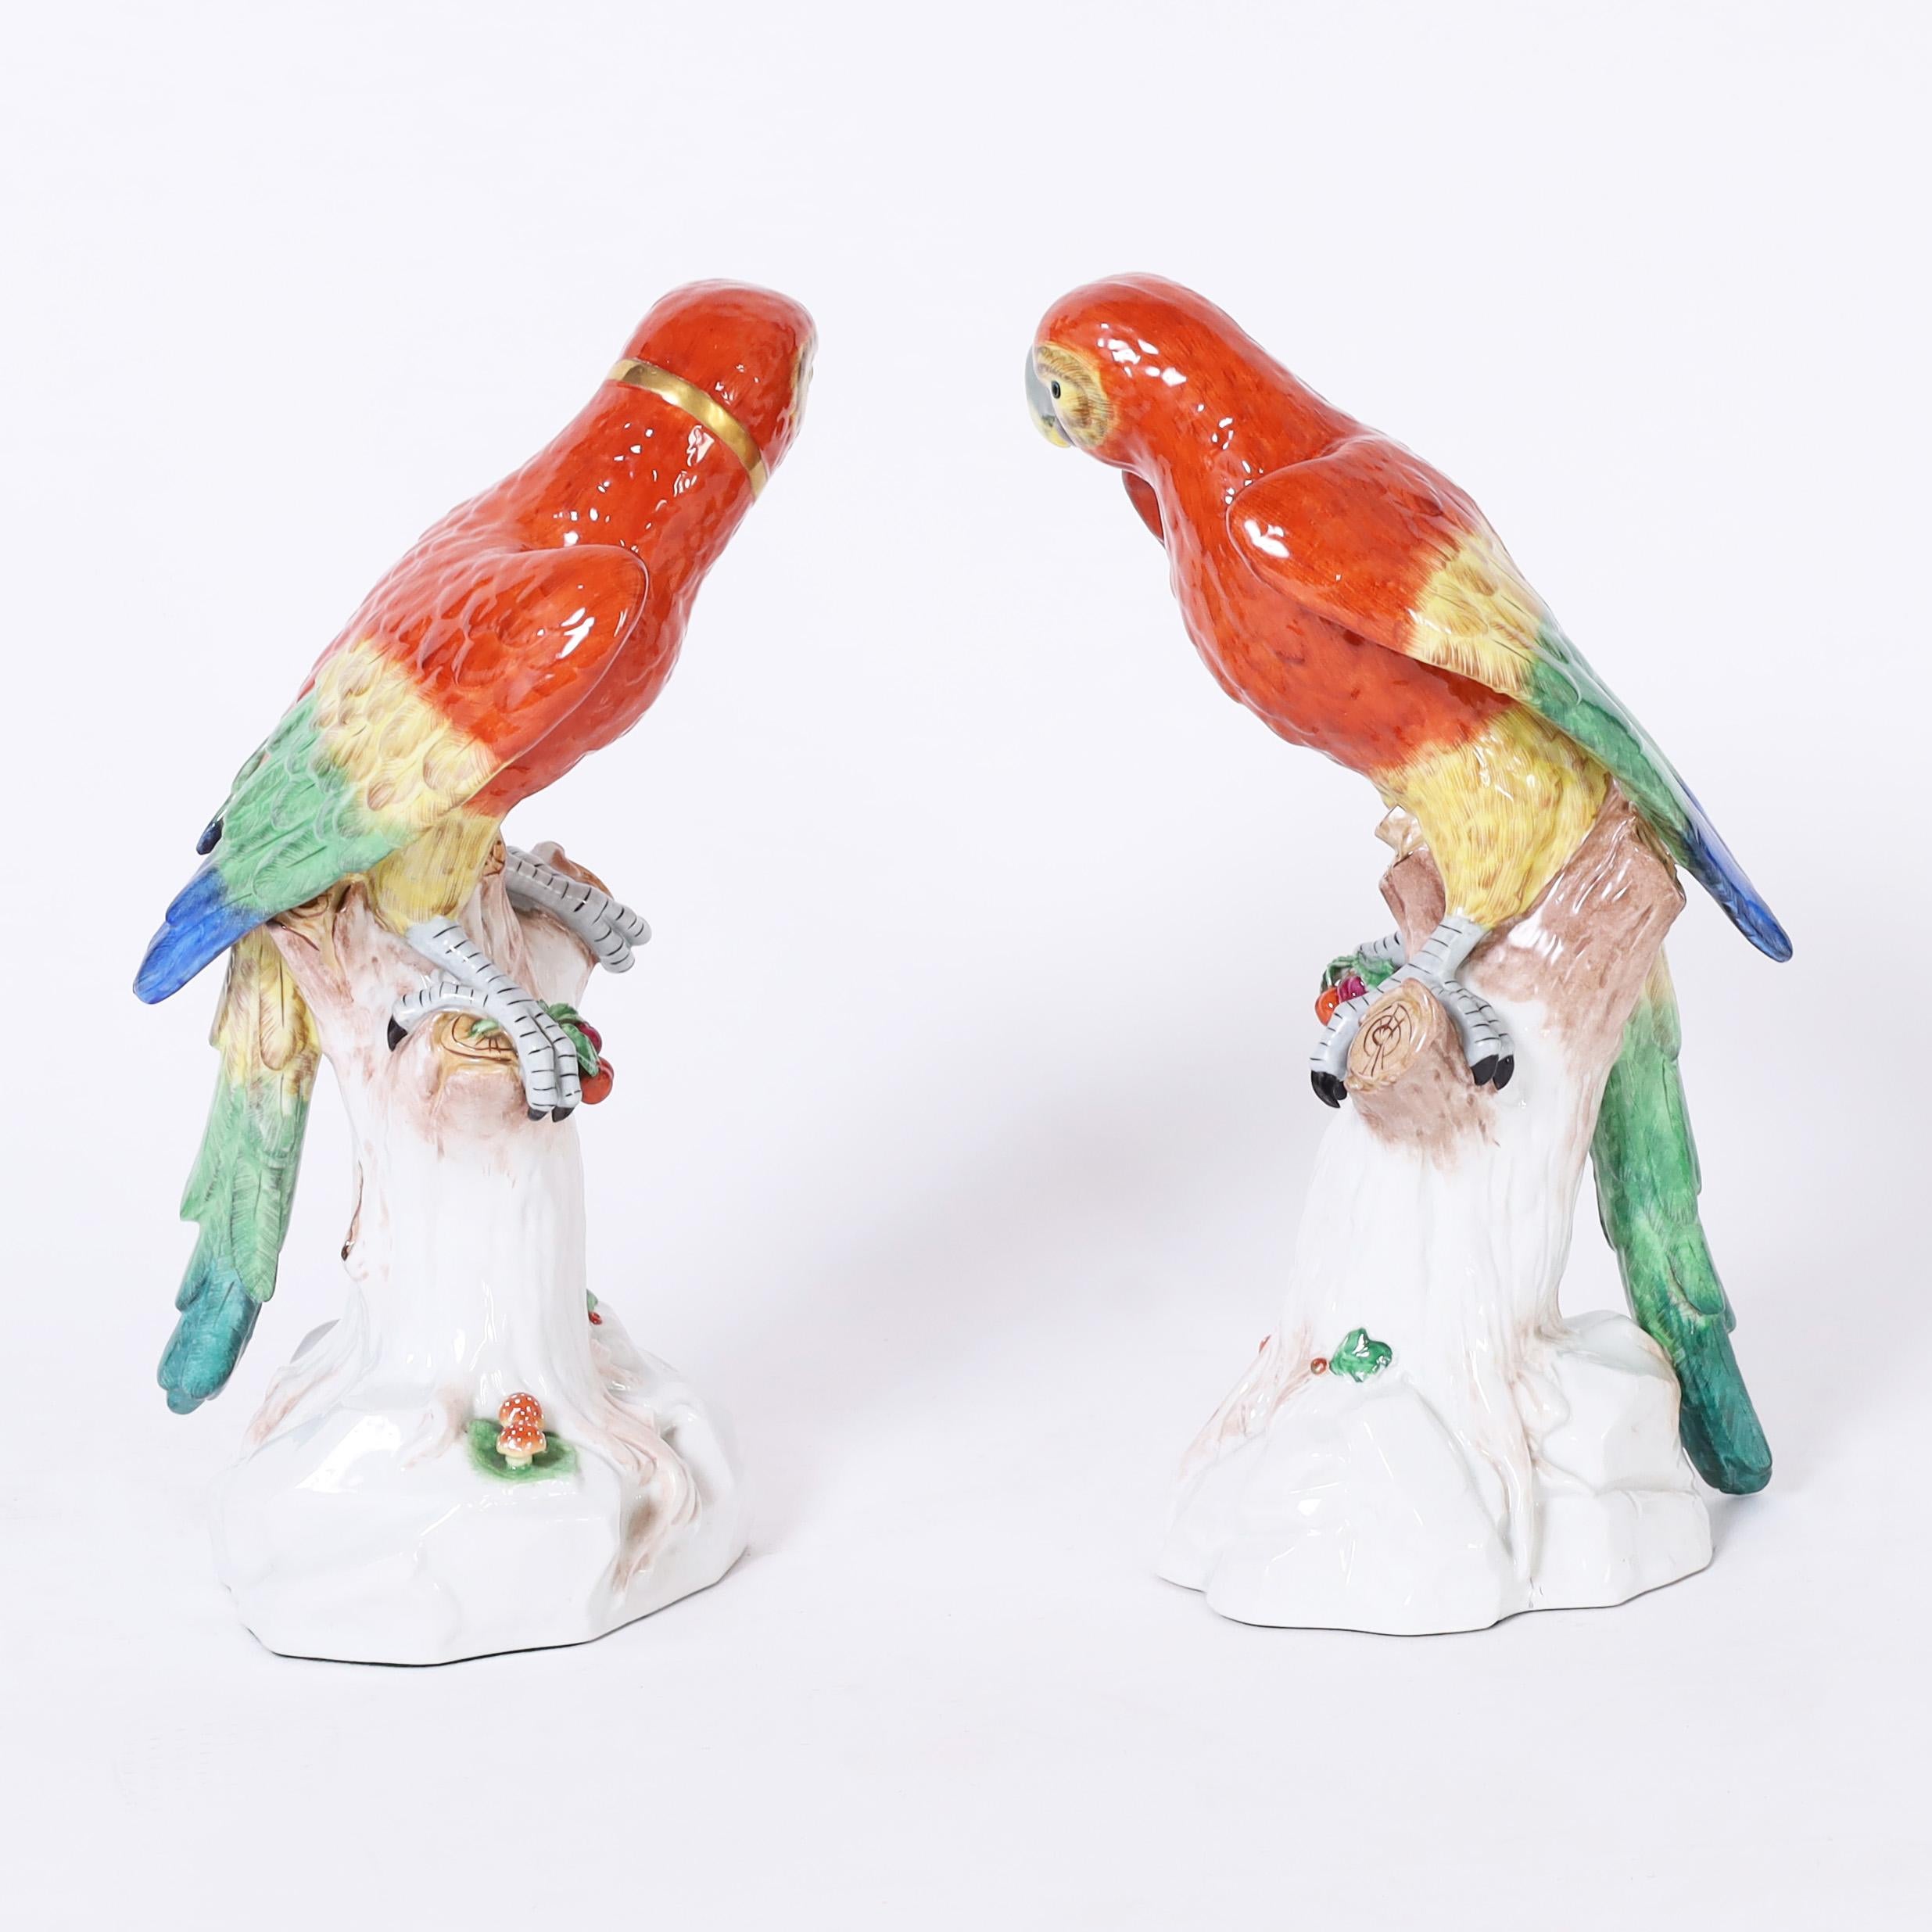 Paire de perroquets en porcelaine vintage grandeur nature, décorés à la main de couleurs tropicales vives et perchés sur des troncs d'arbre. Signé Dresden sur les fonds.